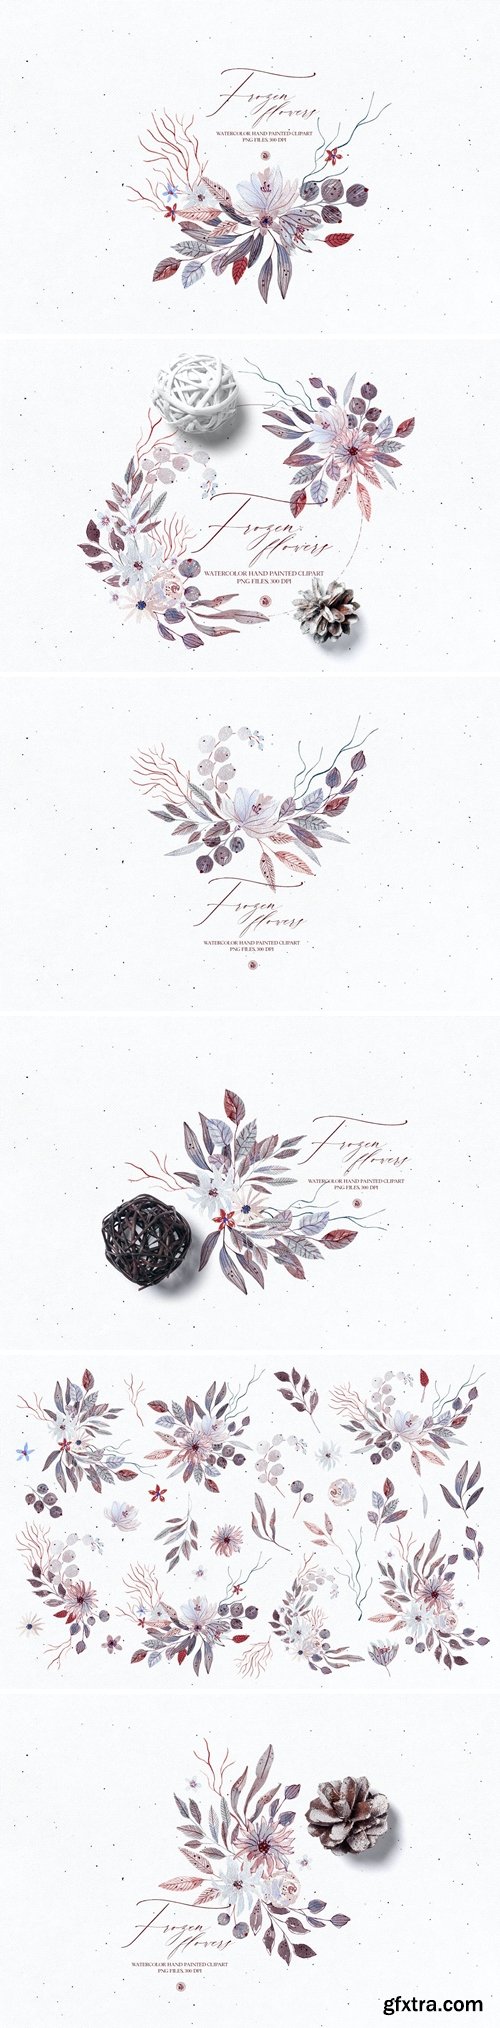 Watercolor floral set - Frozen Flowers